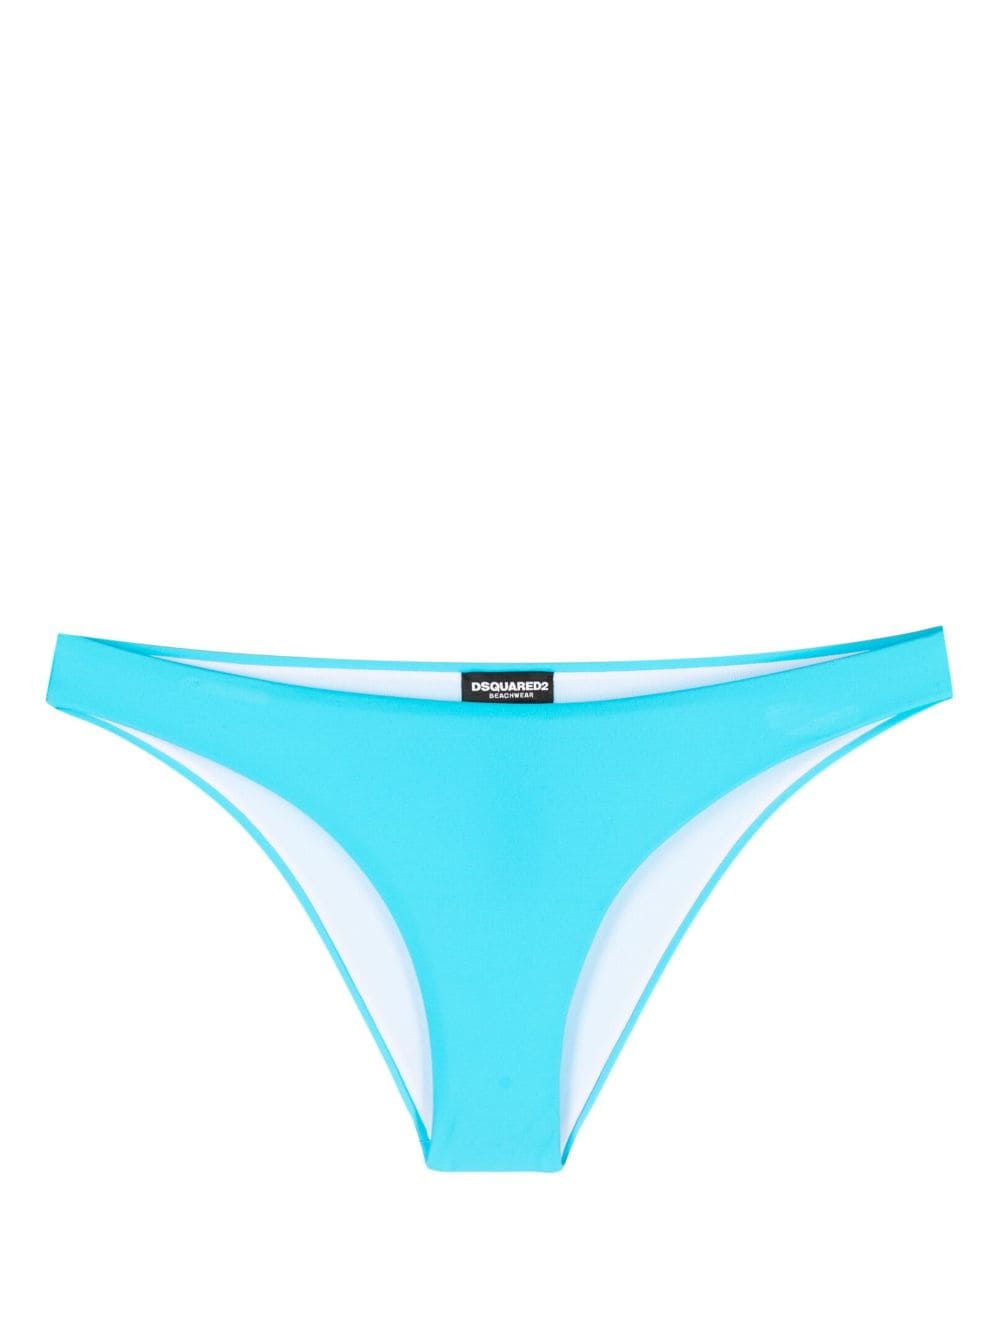 Dsquared2 logo-print bikini bottoms - Blue von Dsquared2